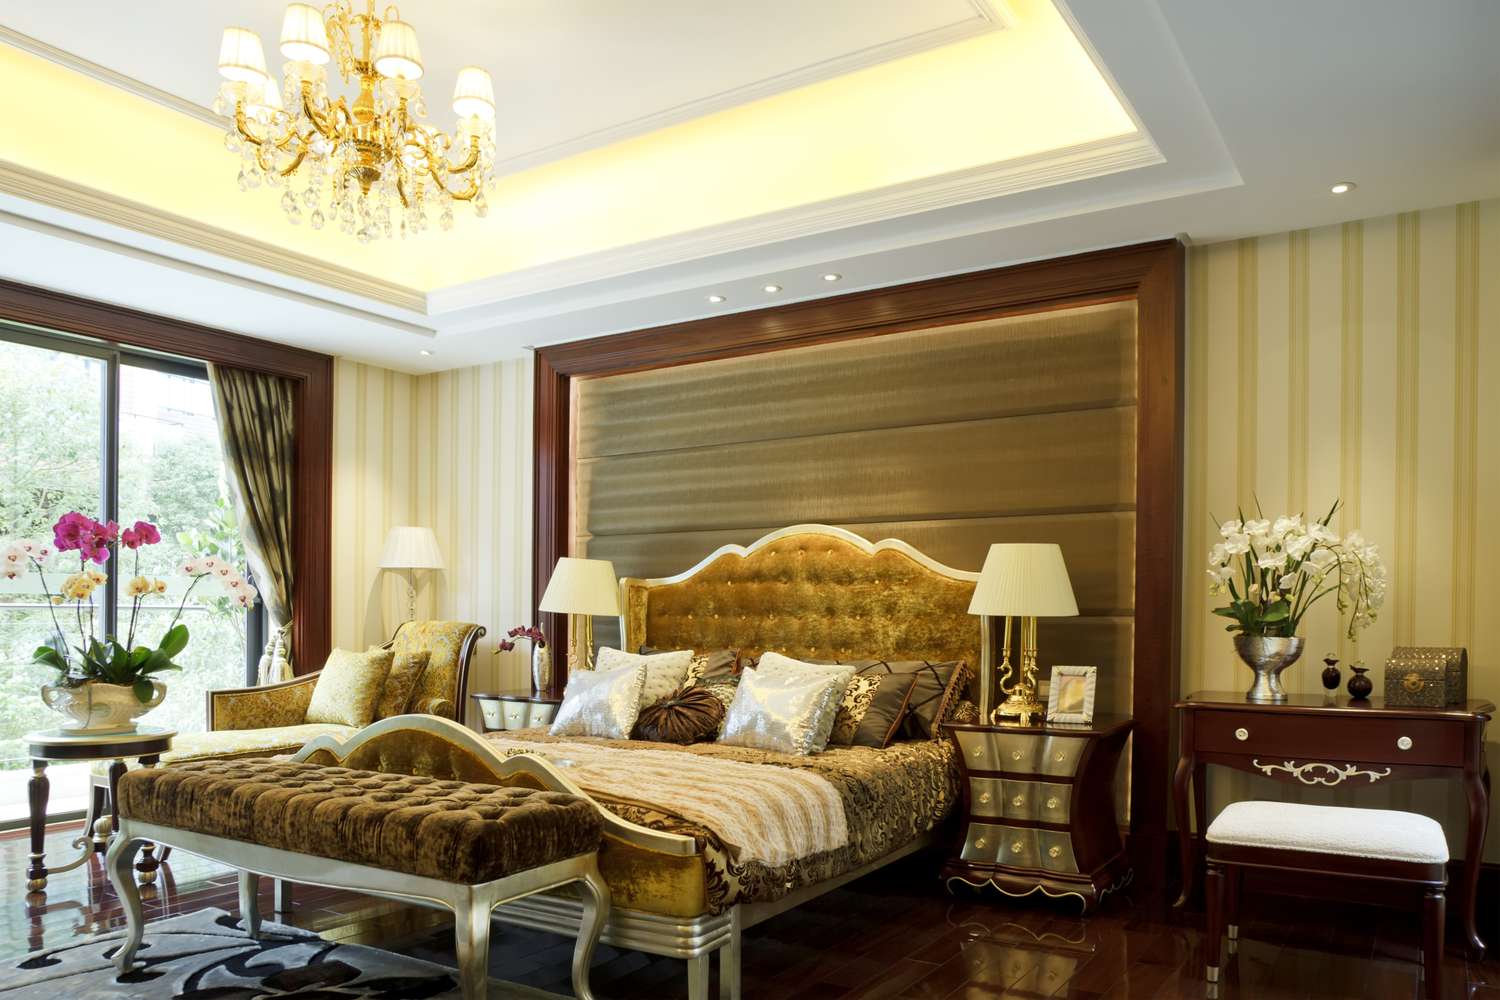 Einzelne Frisurendecke im goldenen Schlafzimmer mit Bett, Beistelltischen, Lampen und Fußbett.